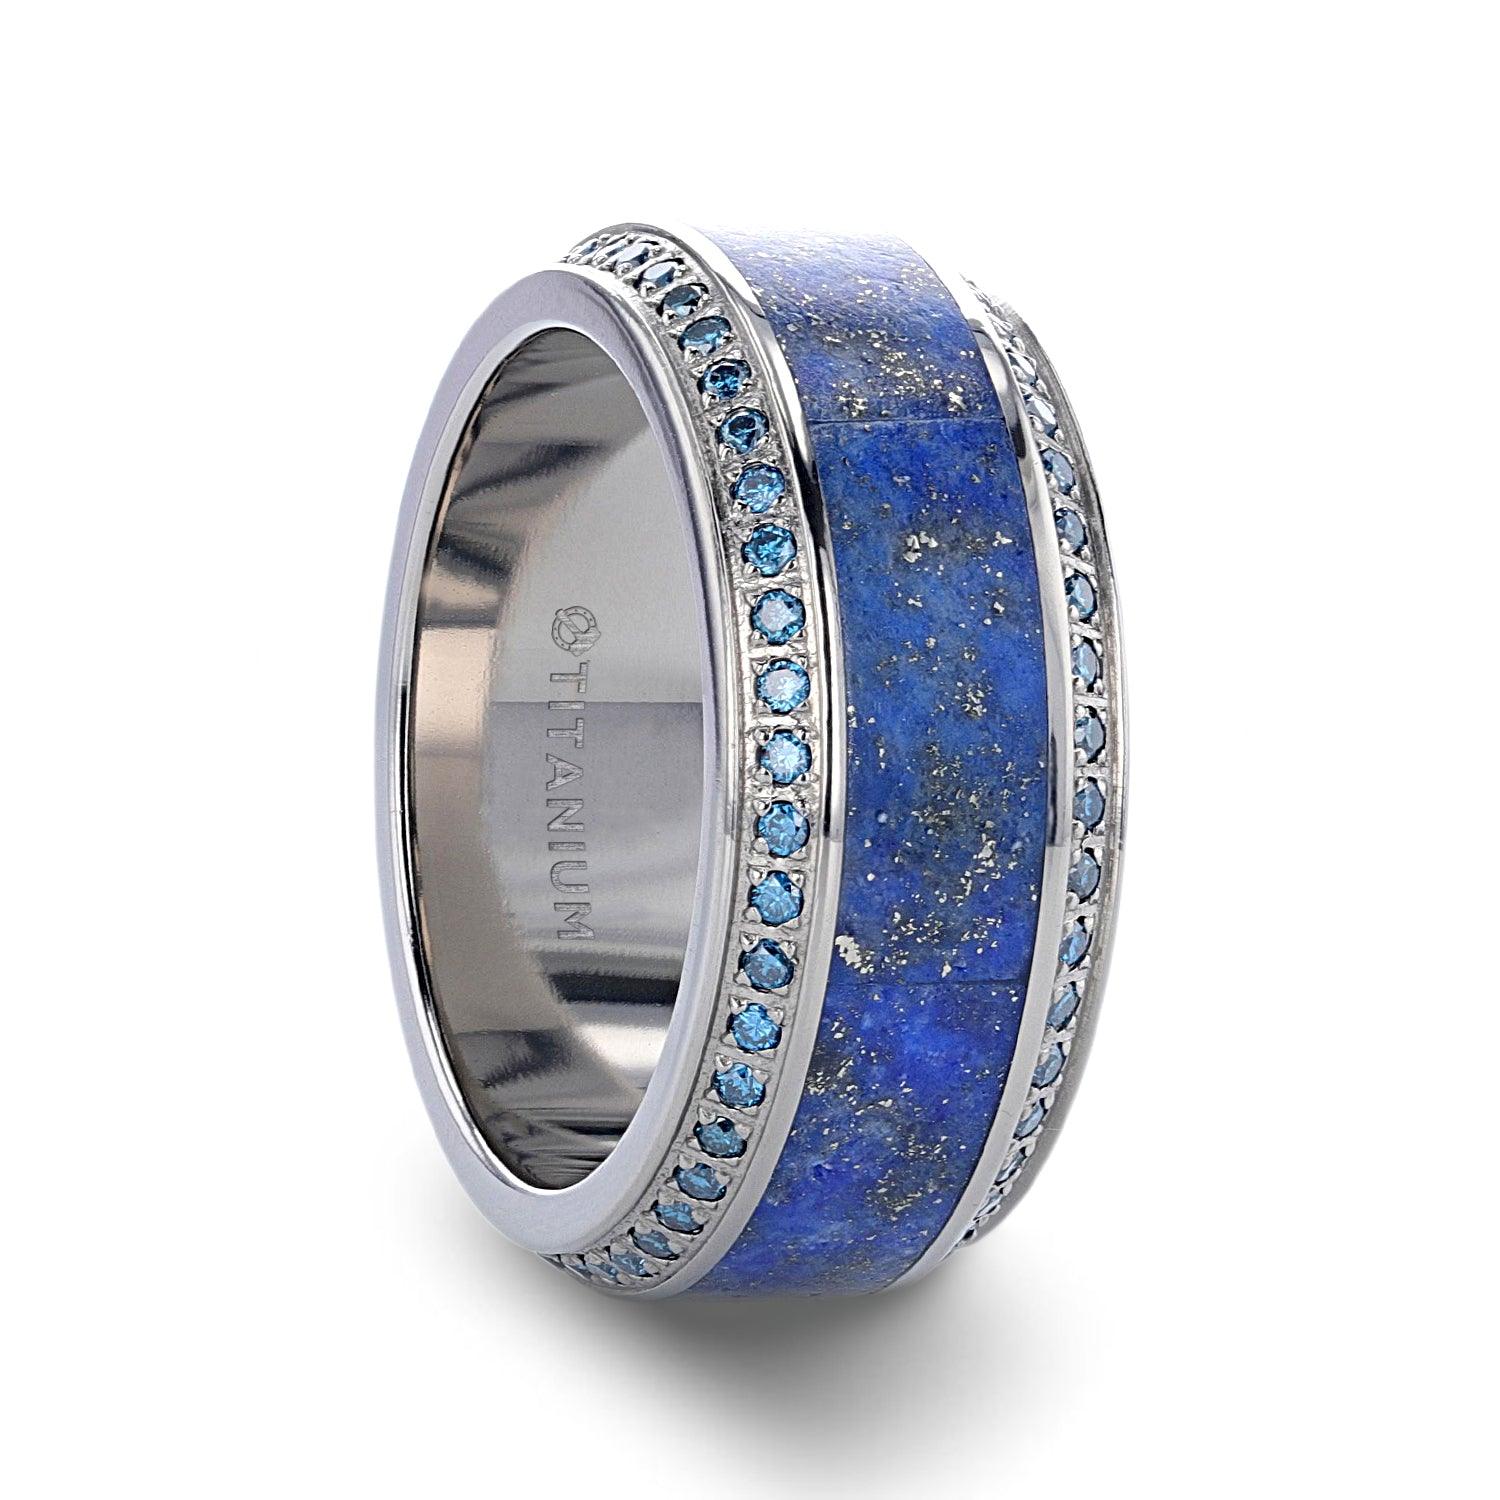 HYDRA - Lapis Lazuli Inlaid Titanium Wedding Ring Polished Beveled Edges Set with Round Blue Diamonds - 10mm - The Rutile Ltd